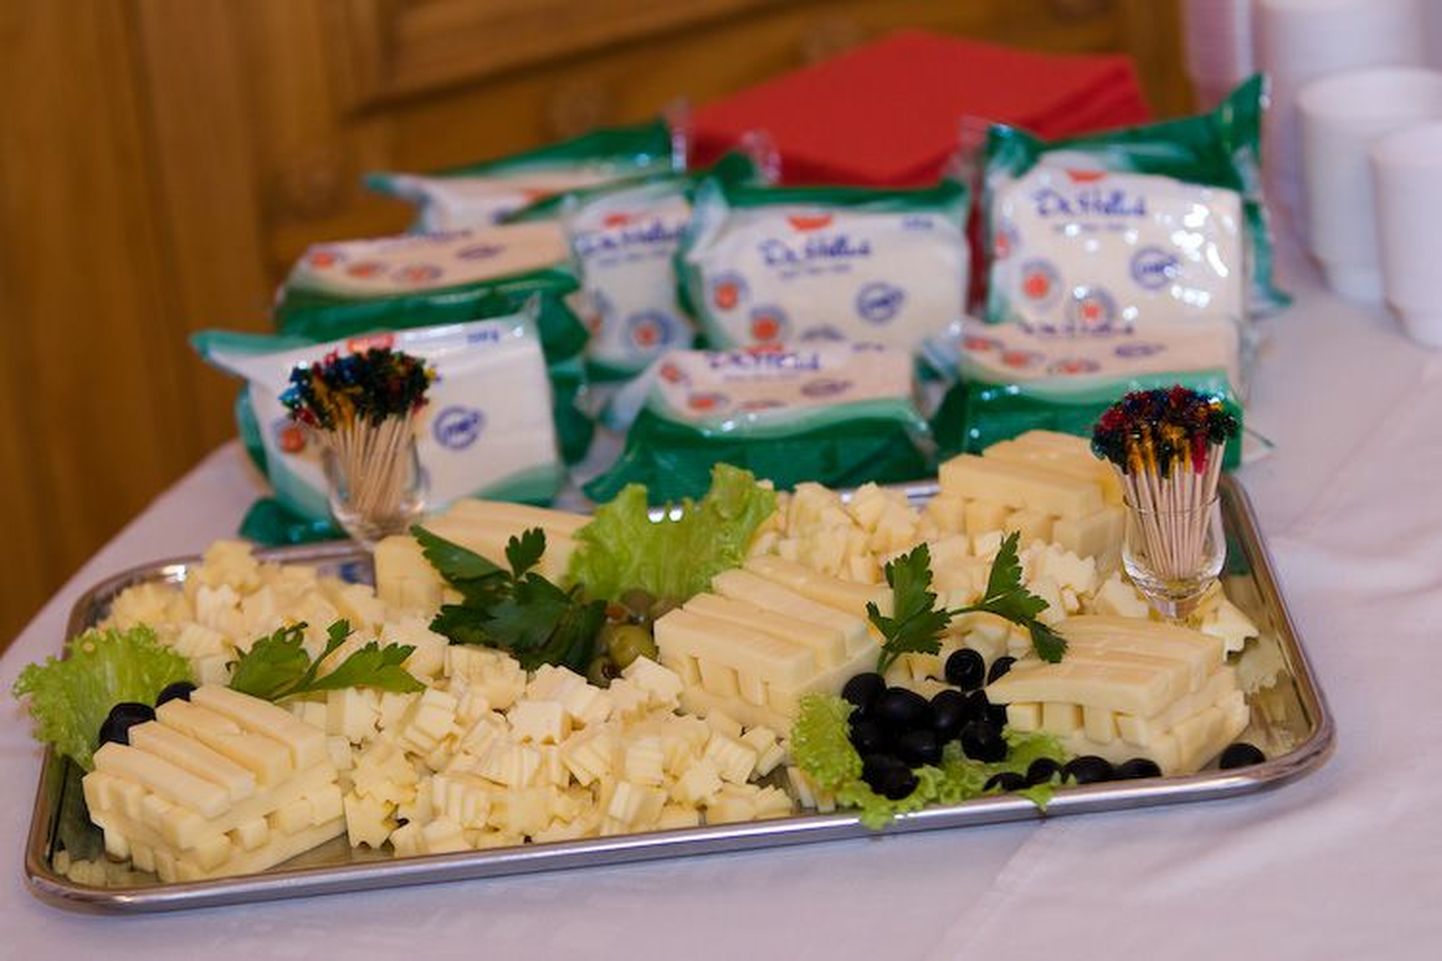 Tere tootevalikusse lisandusid ME-3 bakteriga juust ja piim.